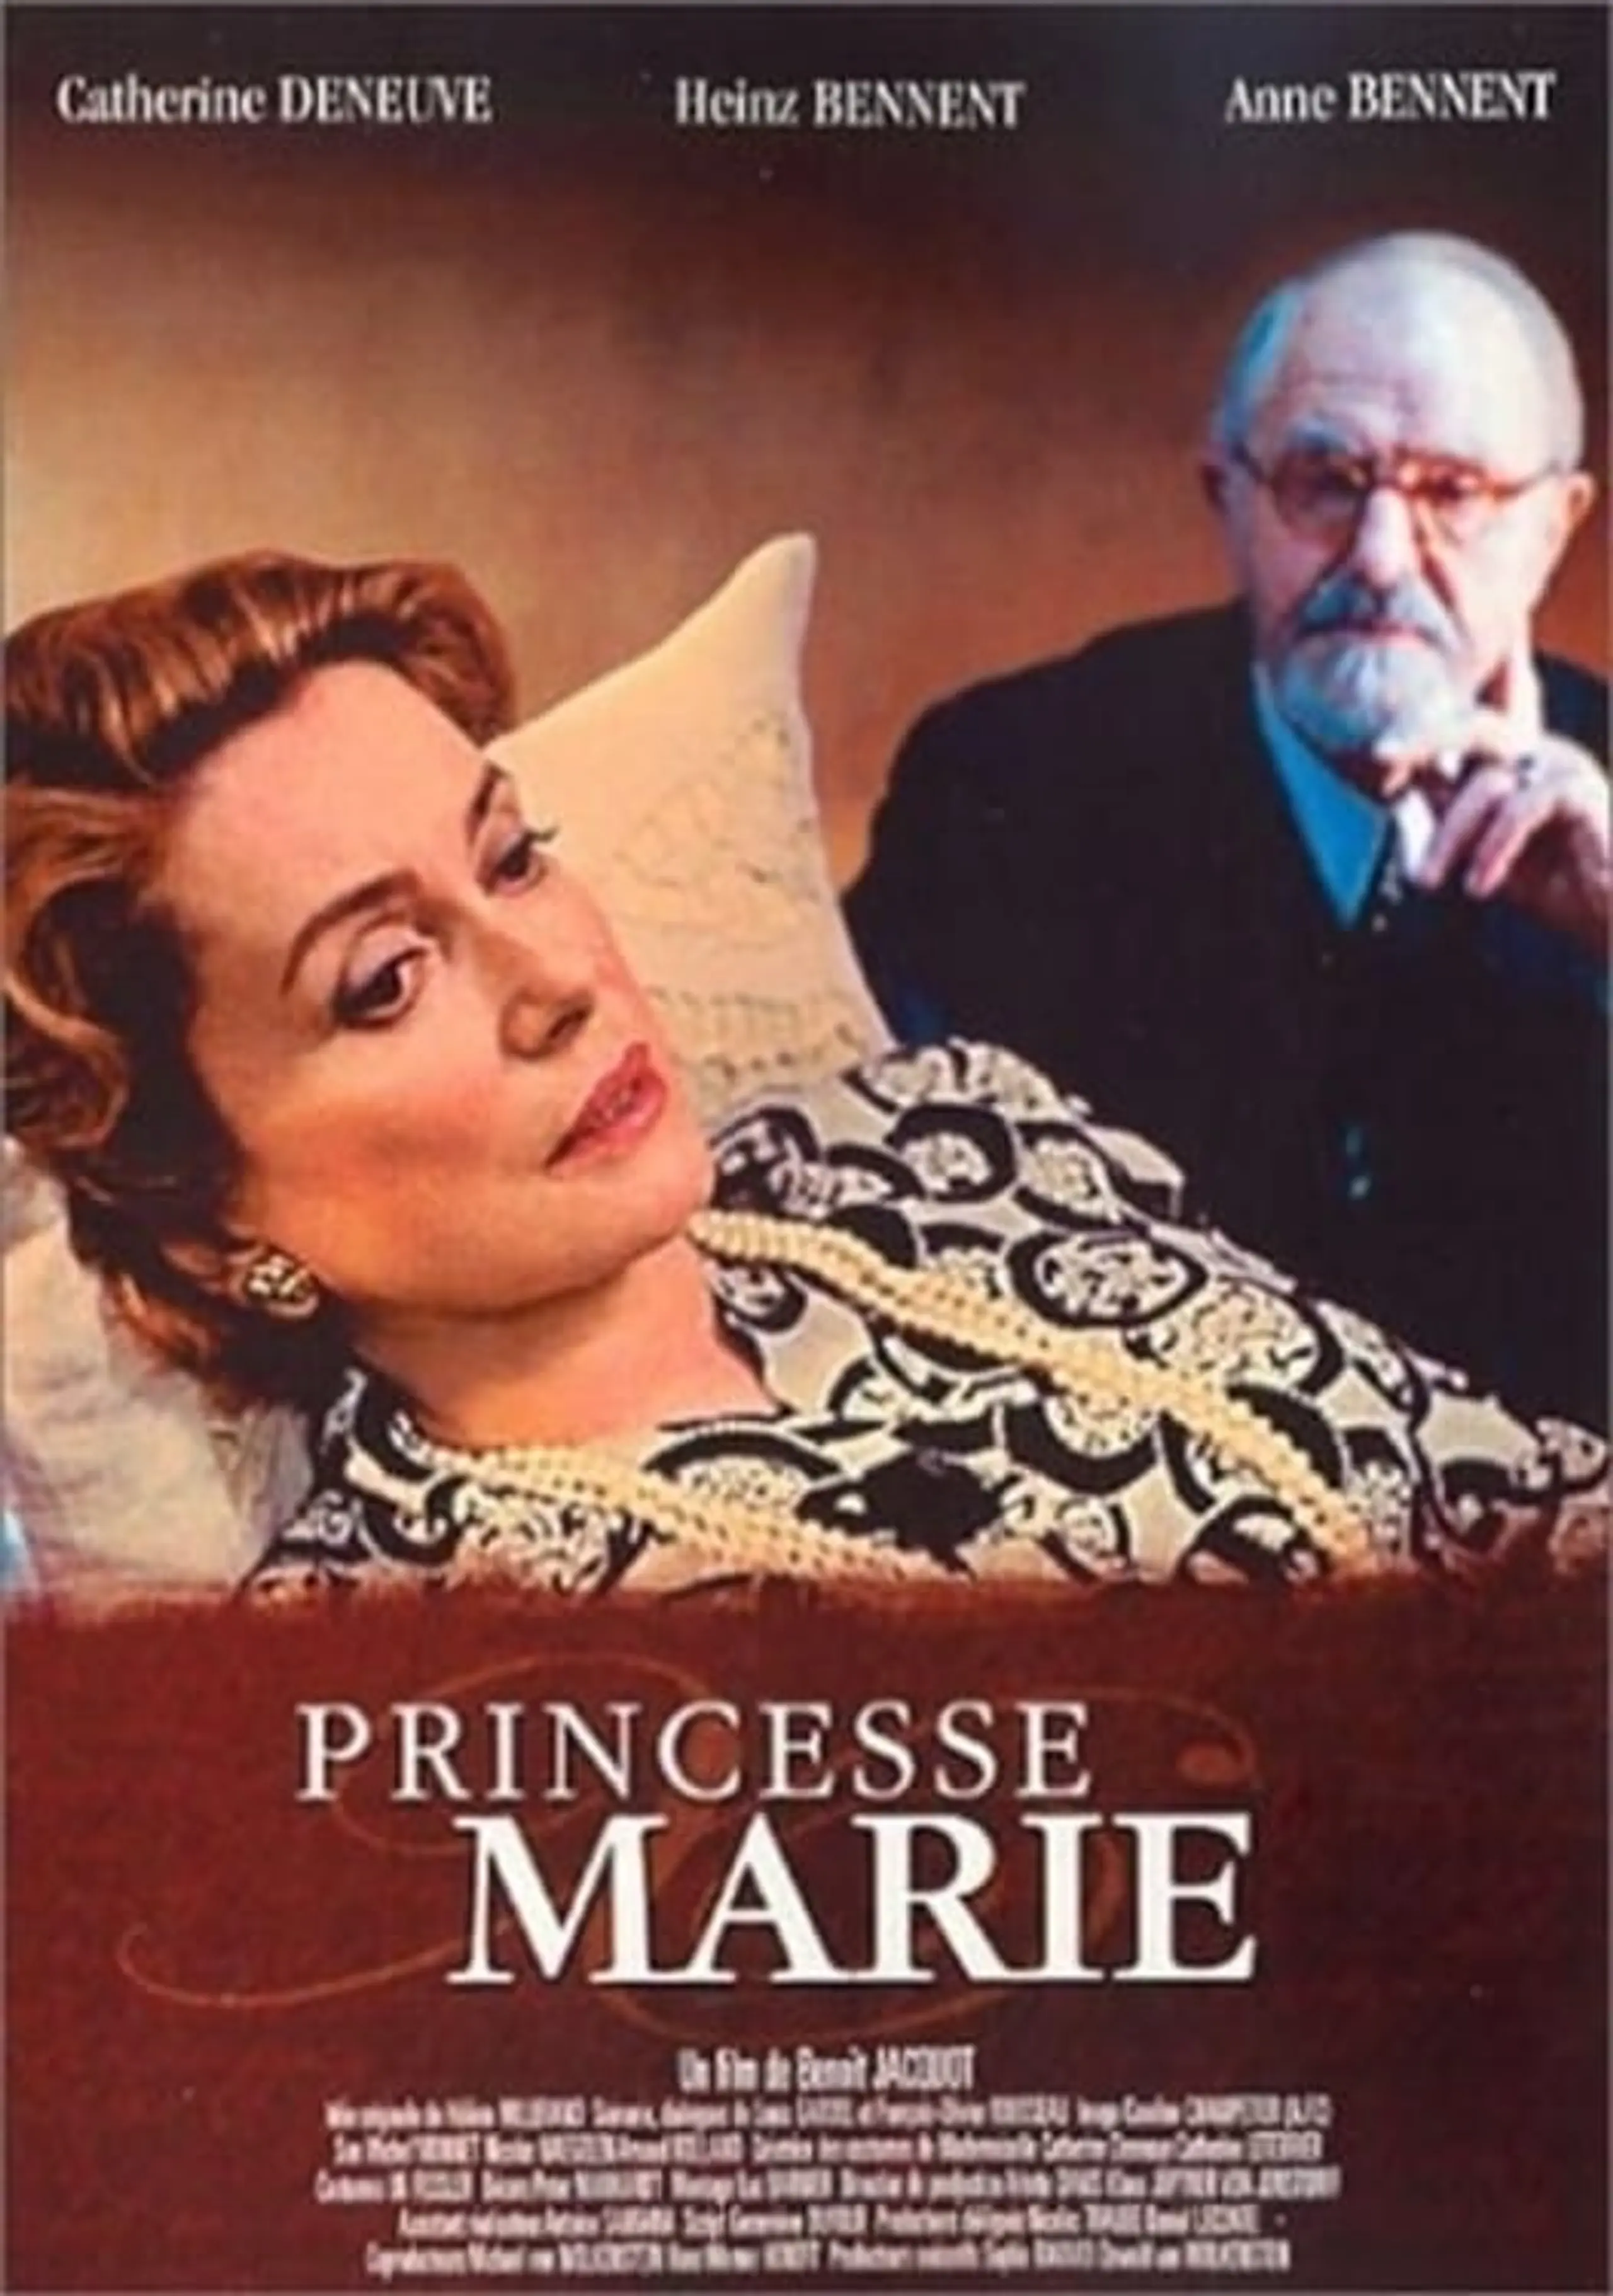 Marie und Freud